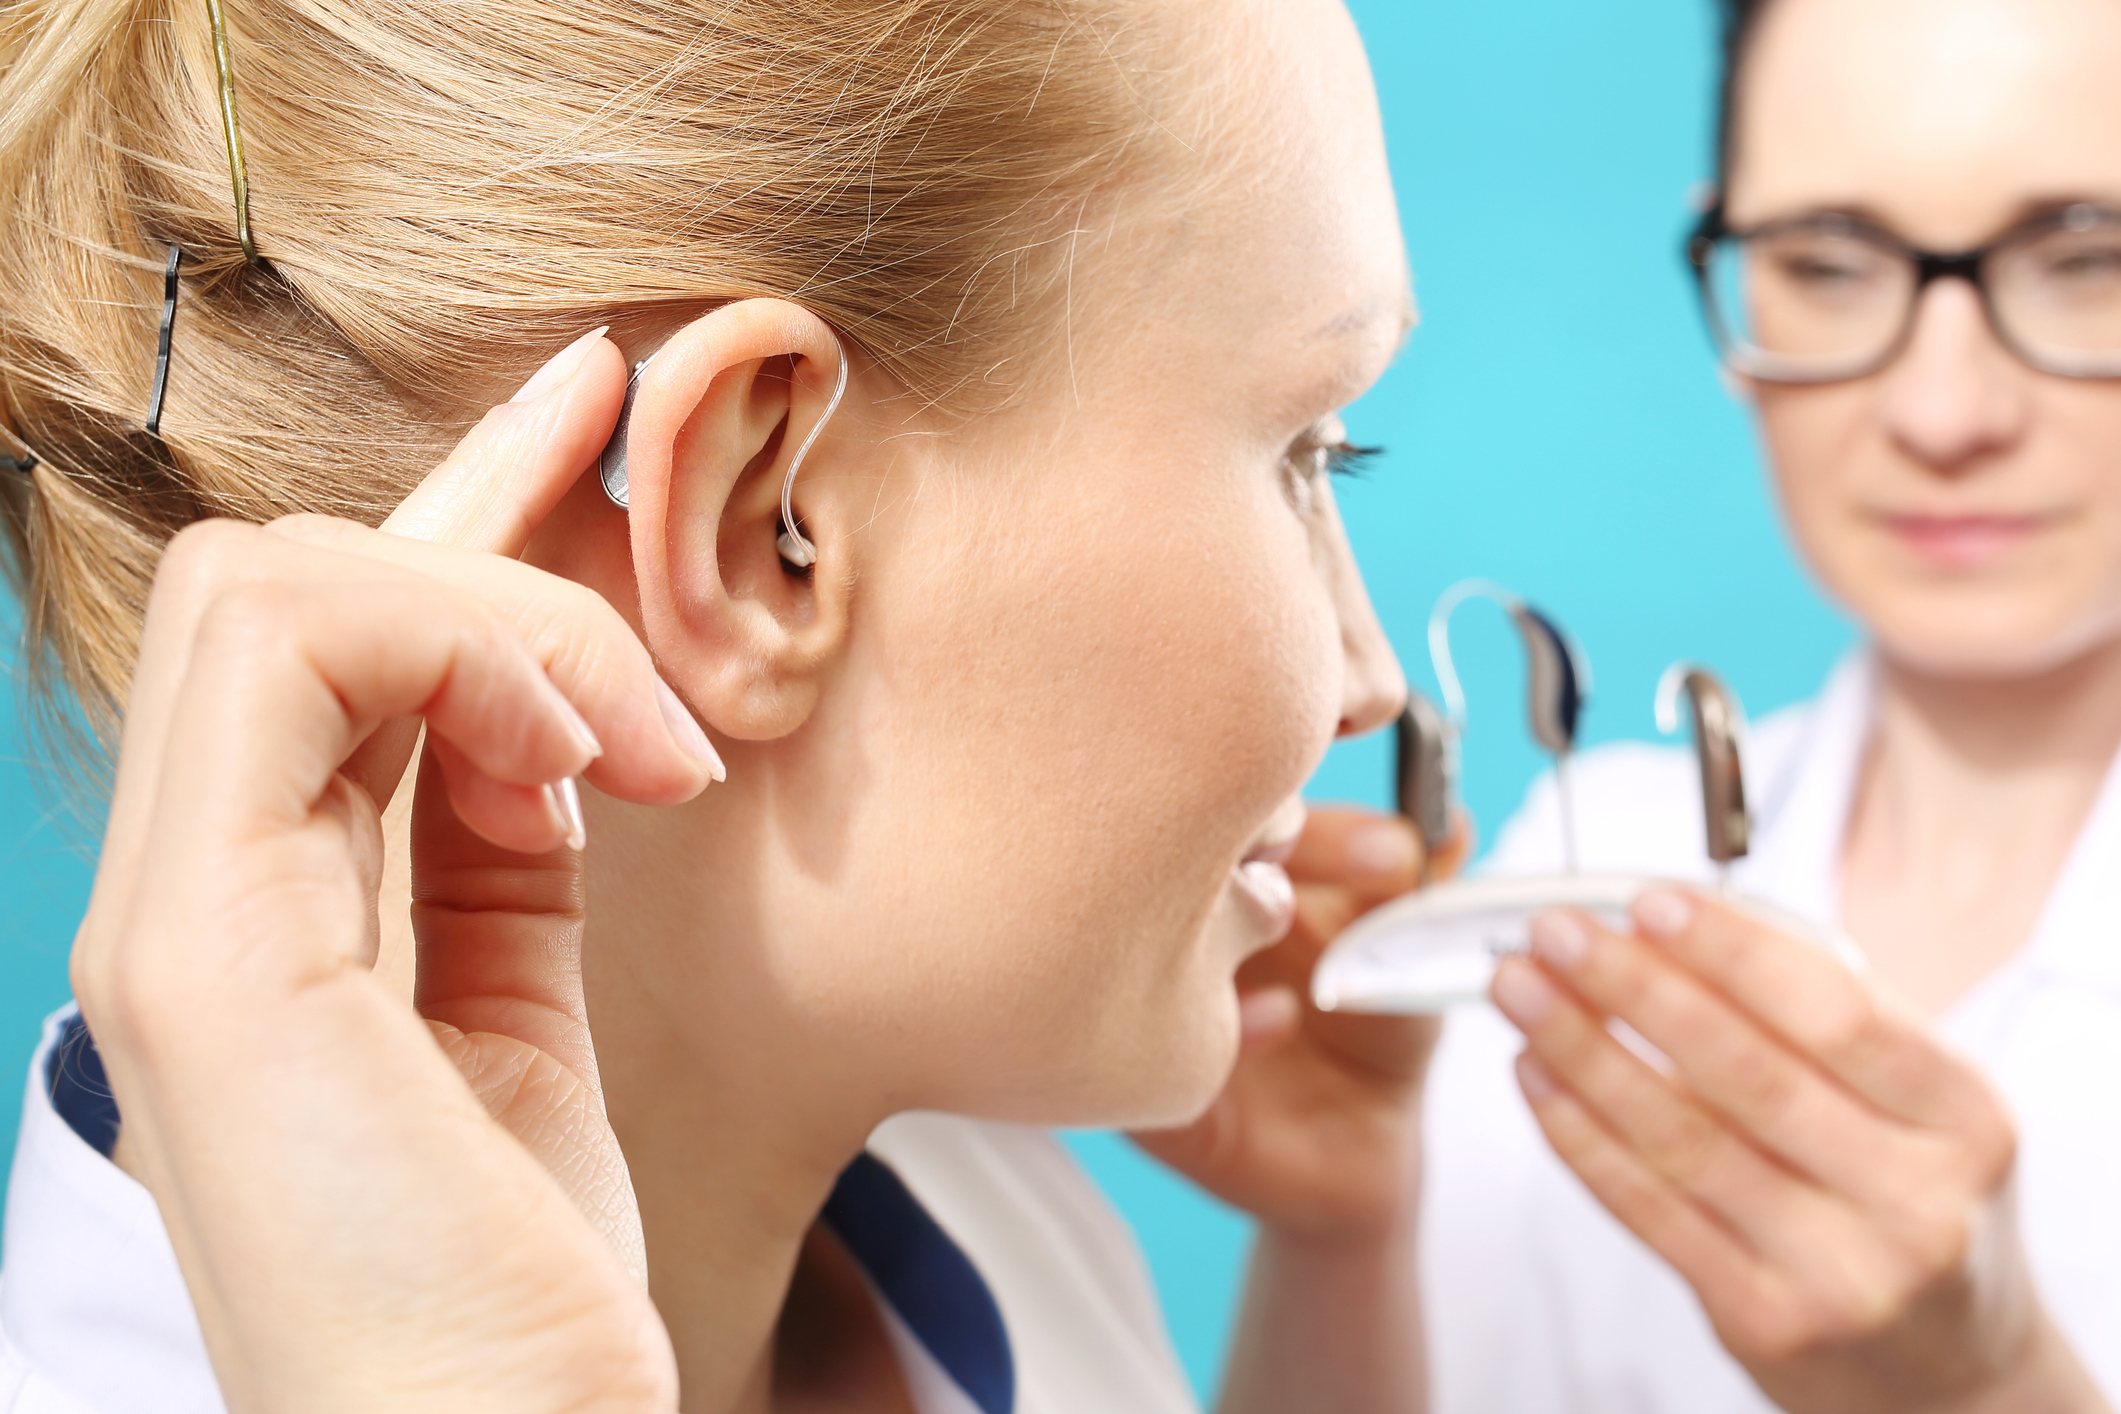 Aparelho auditivo: tudo o que você precisa saber antes de começar a usar!